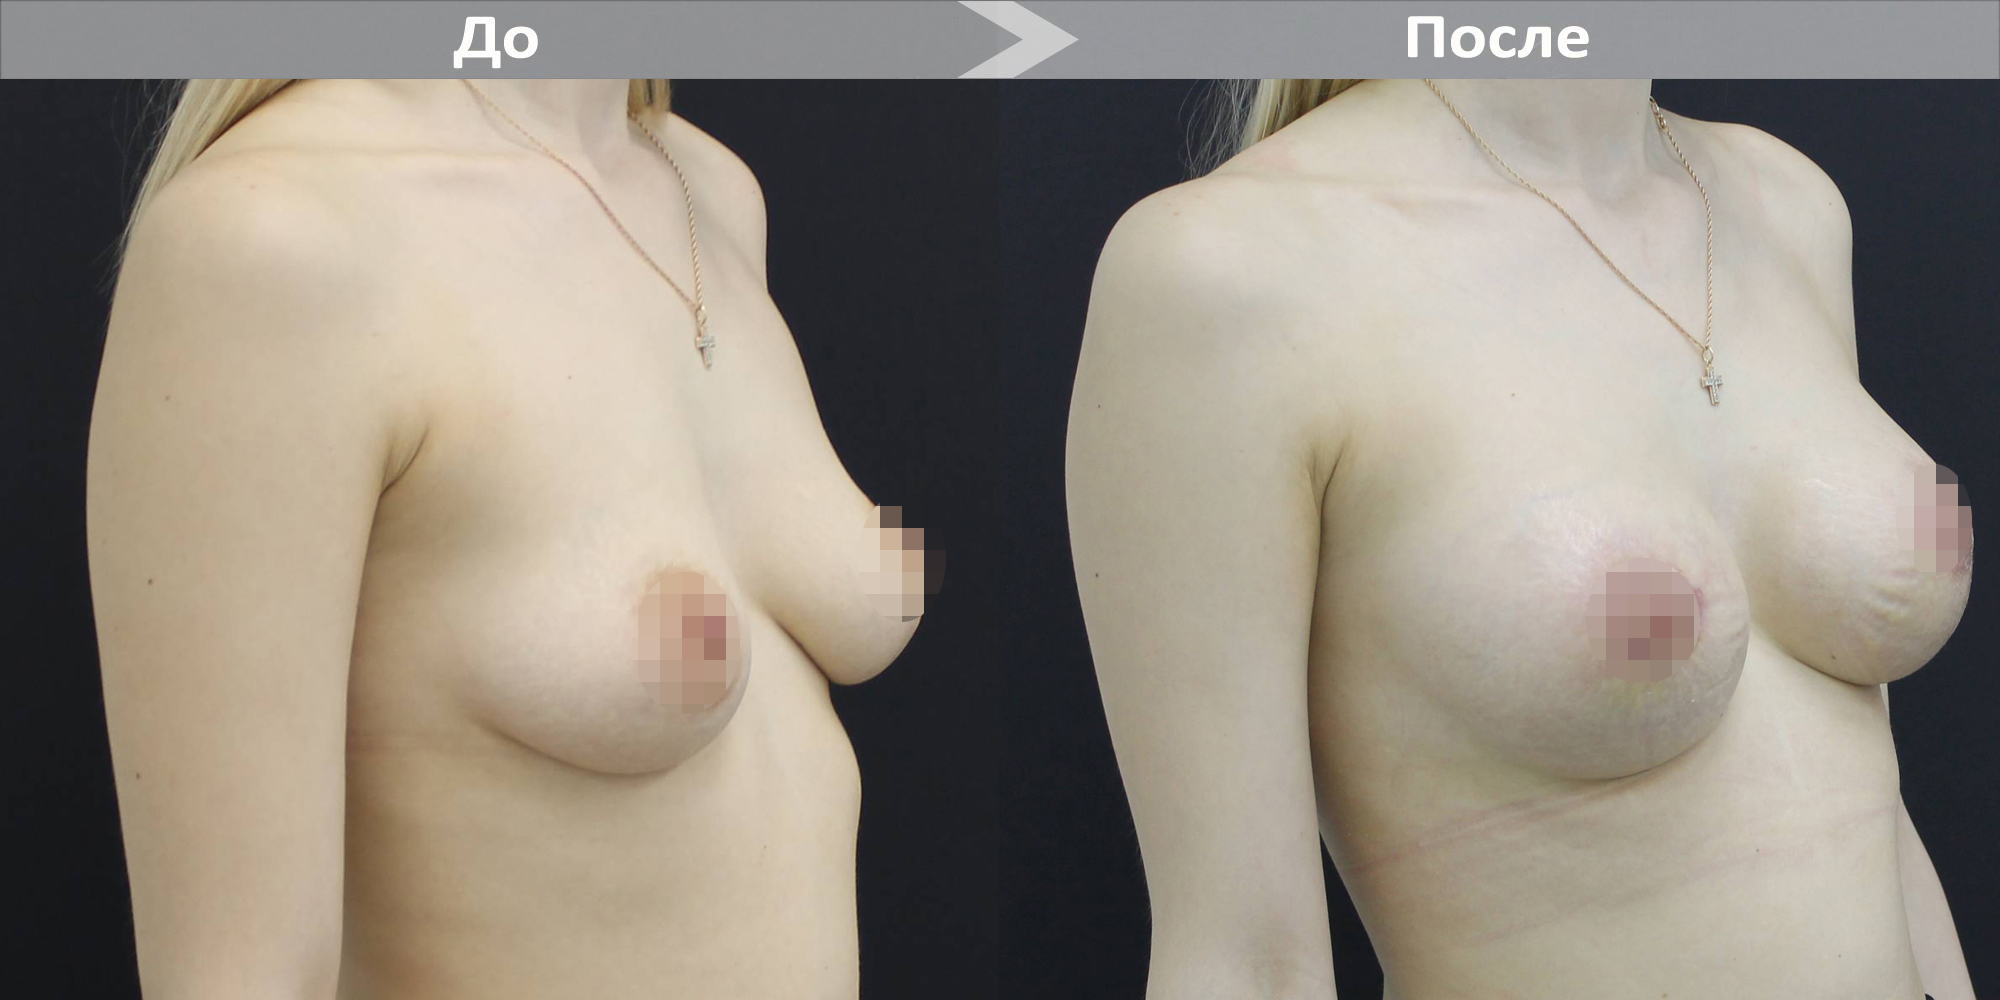 уменьшение размера груди операцией фото 52